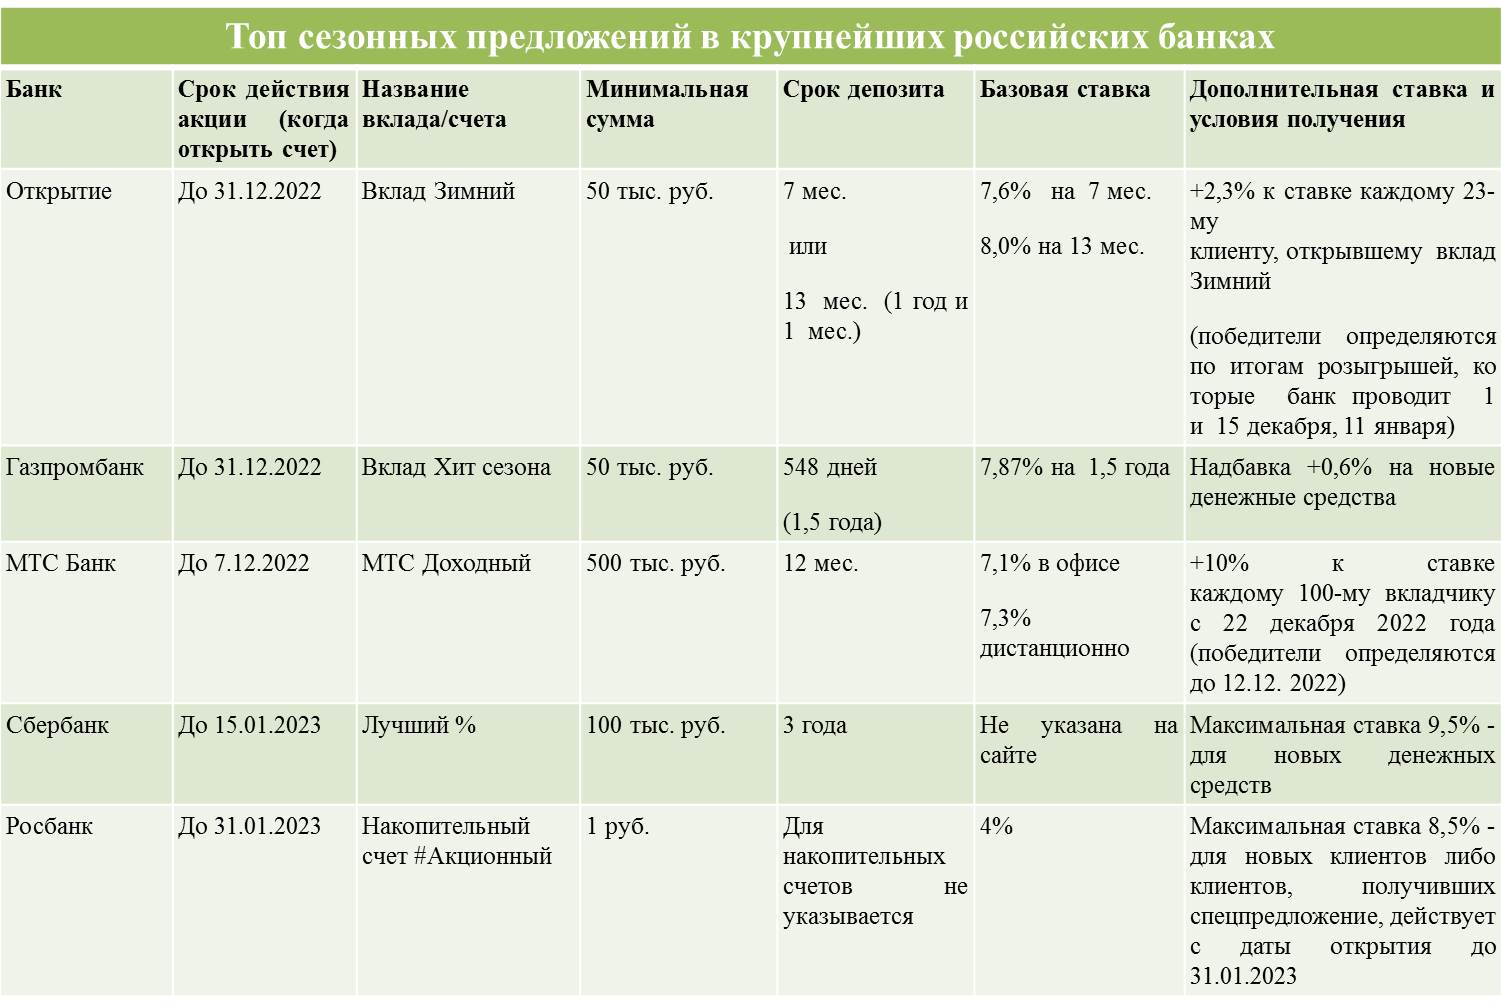 Источники: данные banki.ru, официальные сайты банков